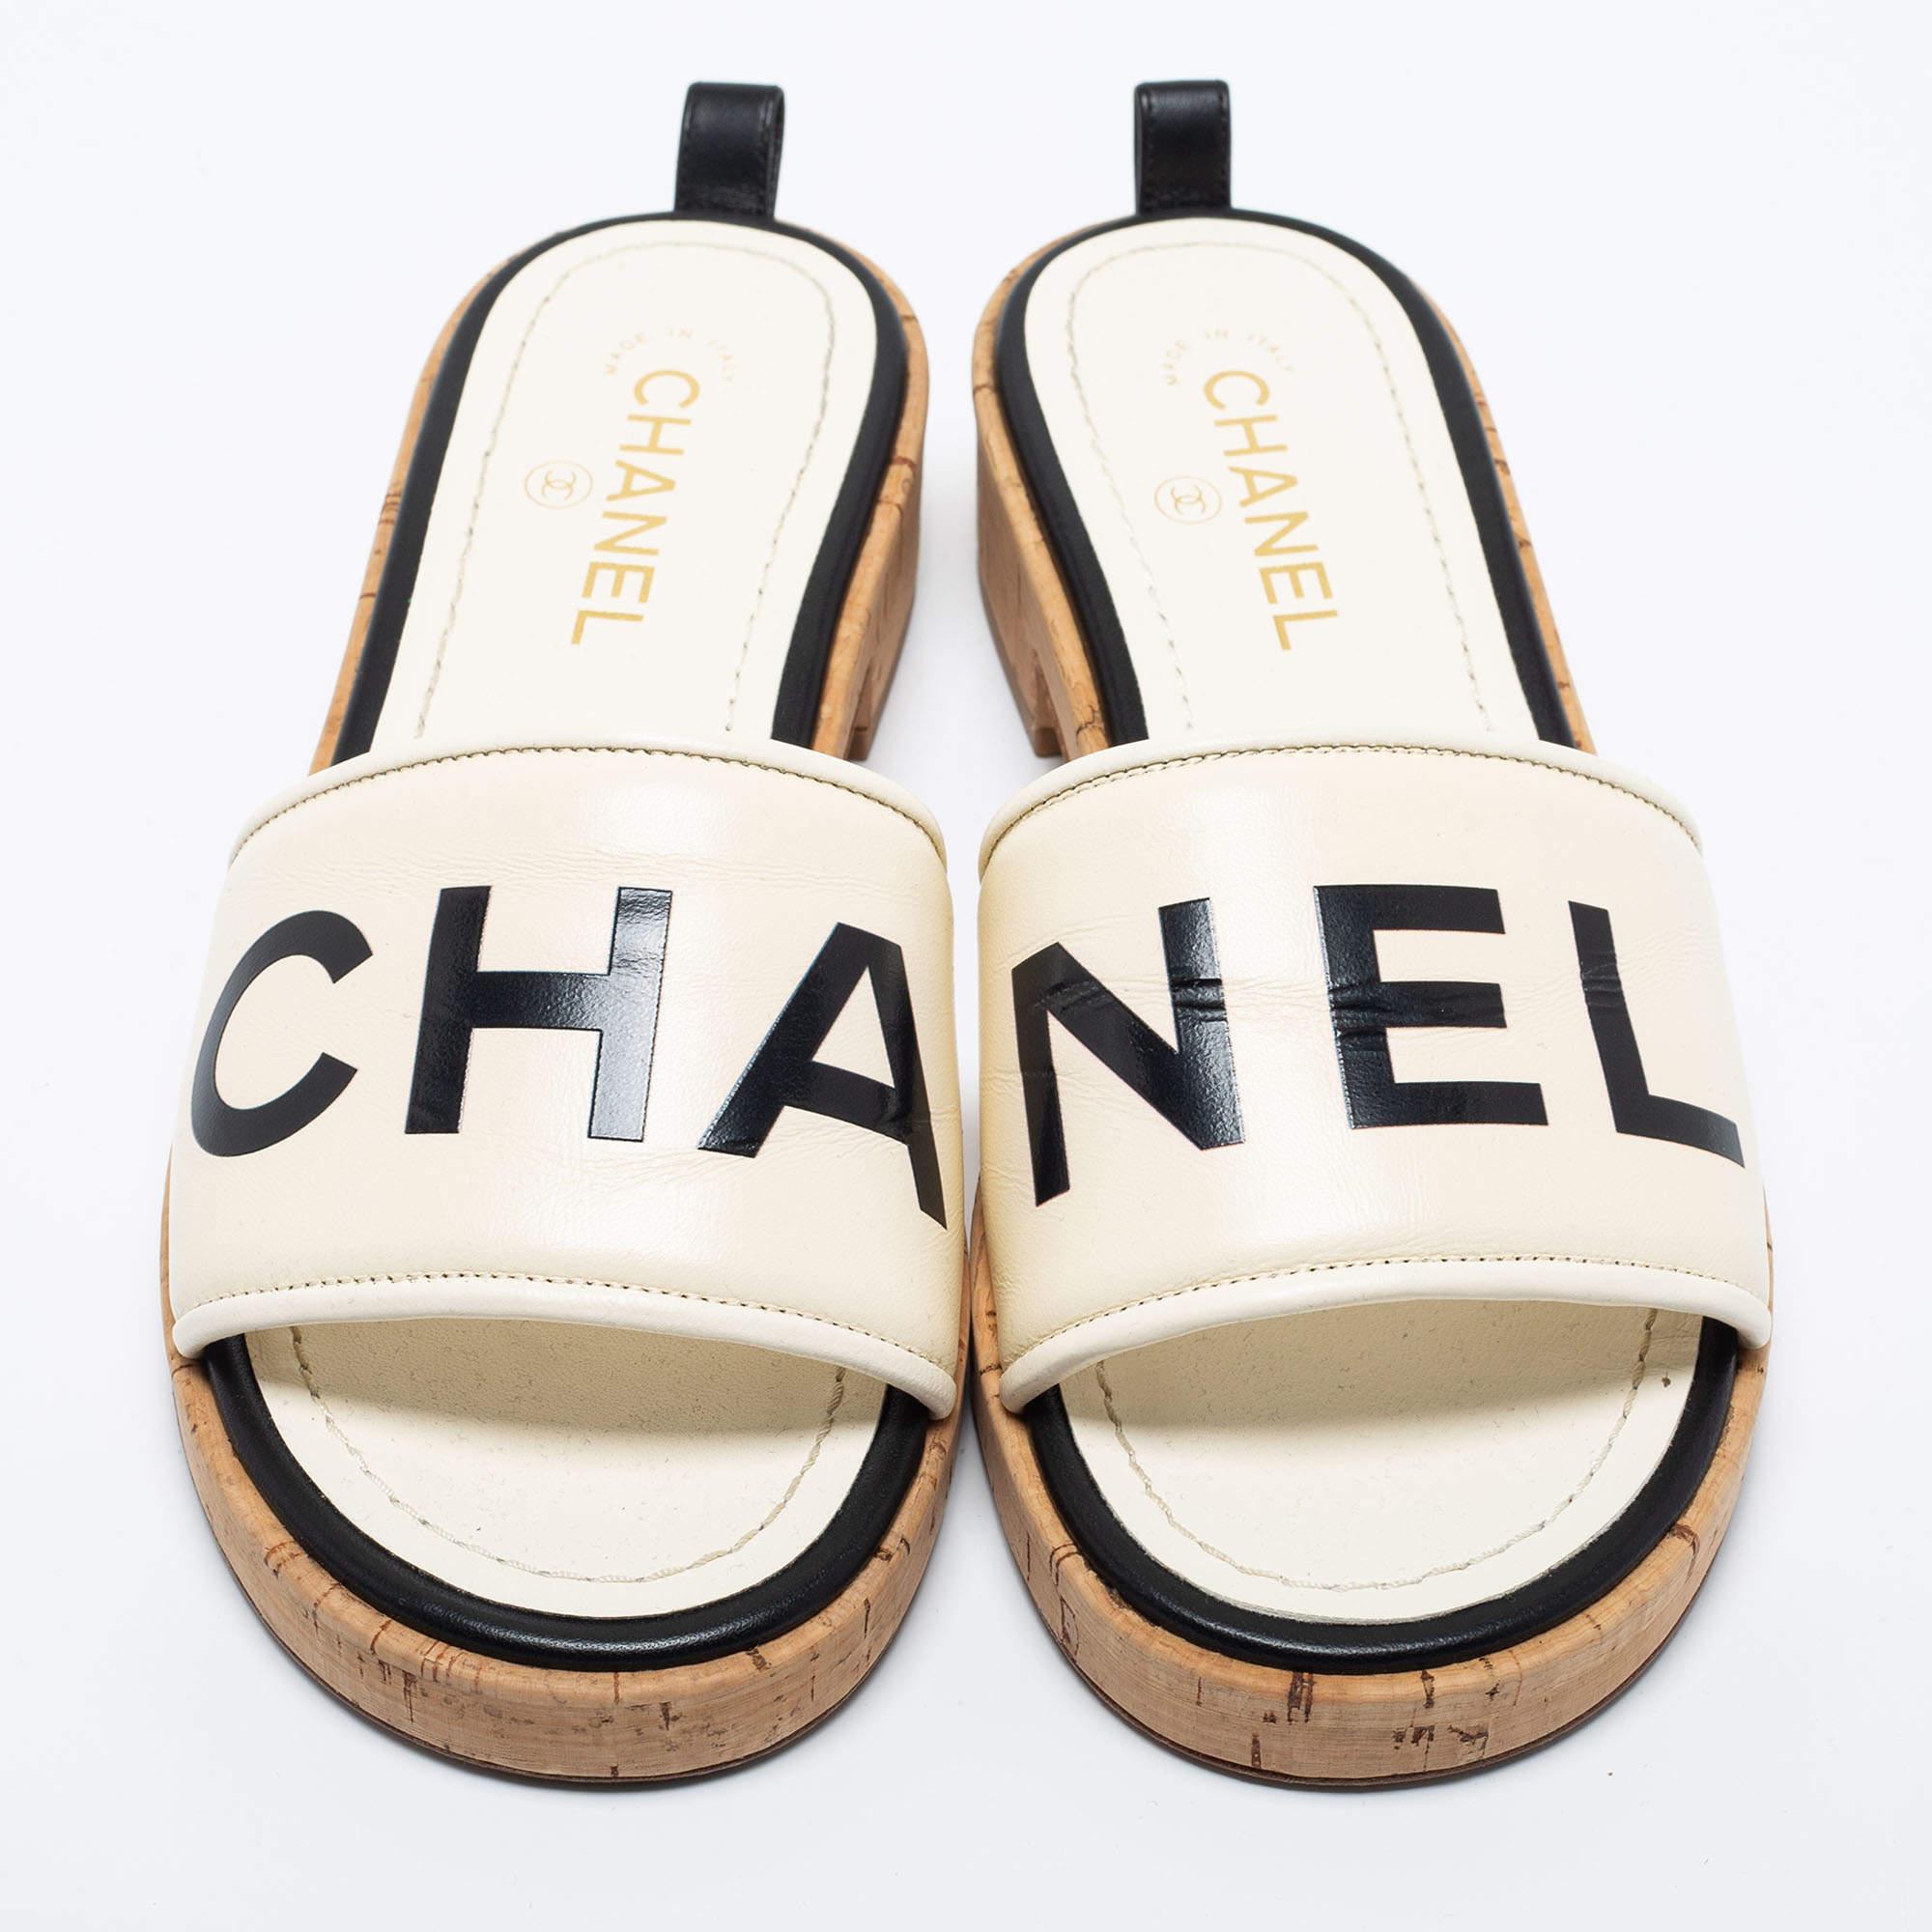 Chanel Cork Slides -4 For Sale on 1stDibs